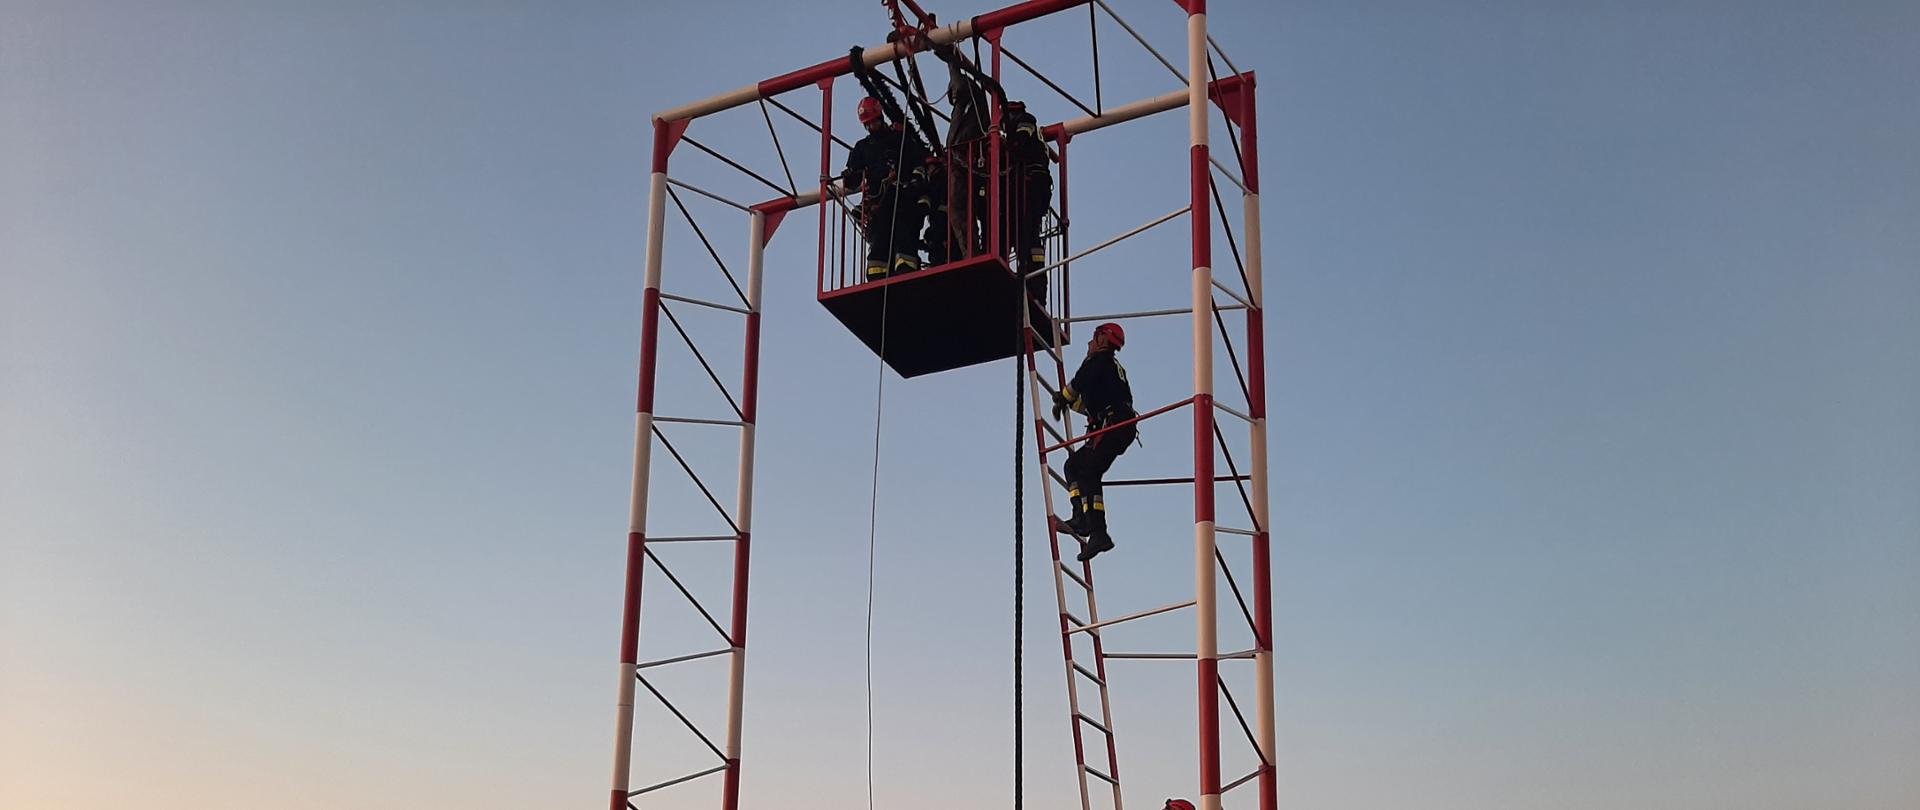 Strażacy w kombinezonach podczas ćwiczeń wysokościowych